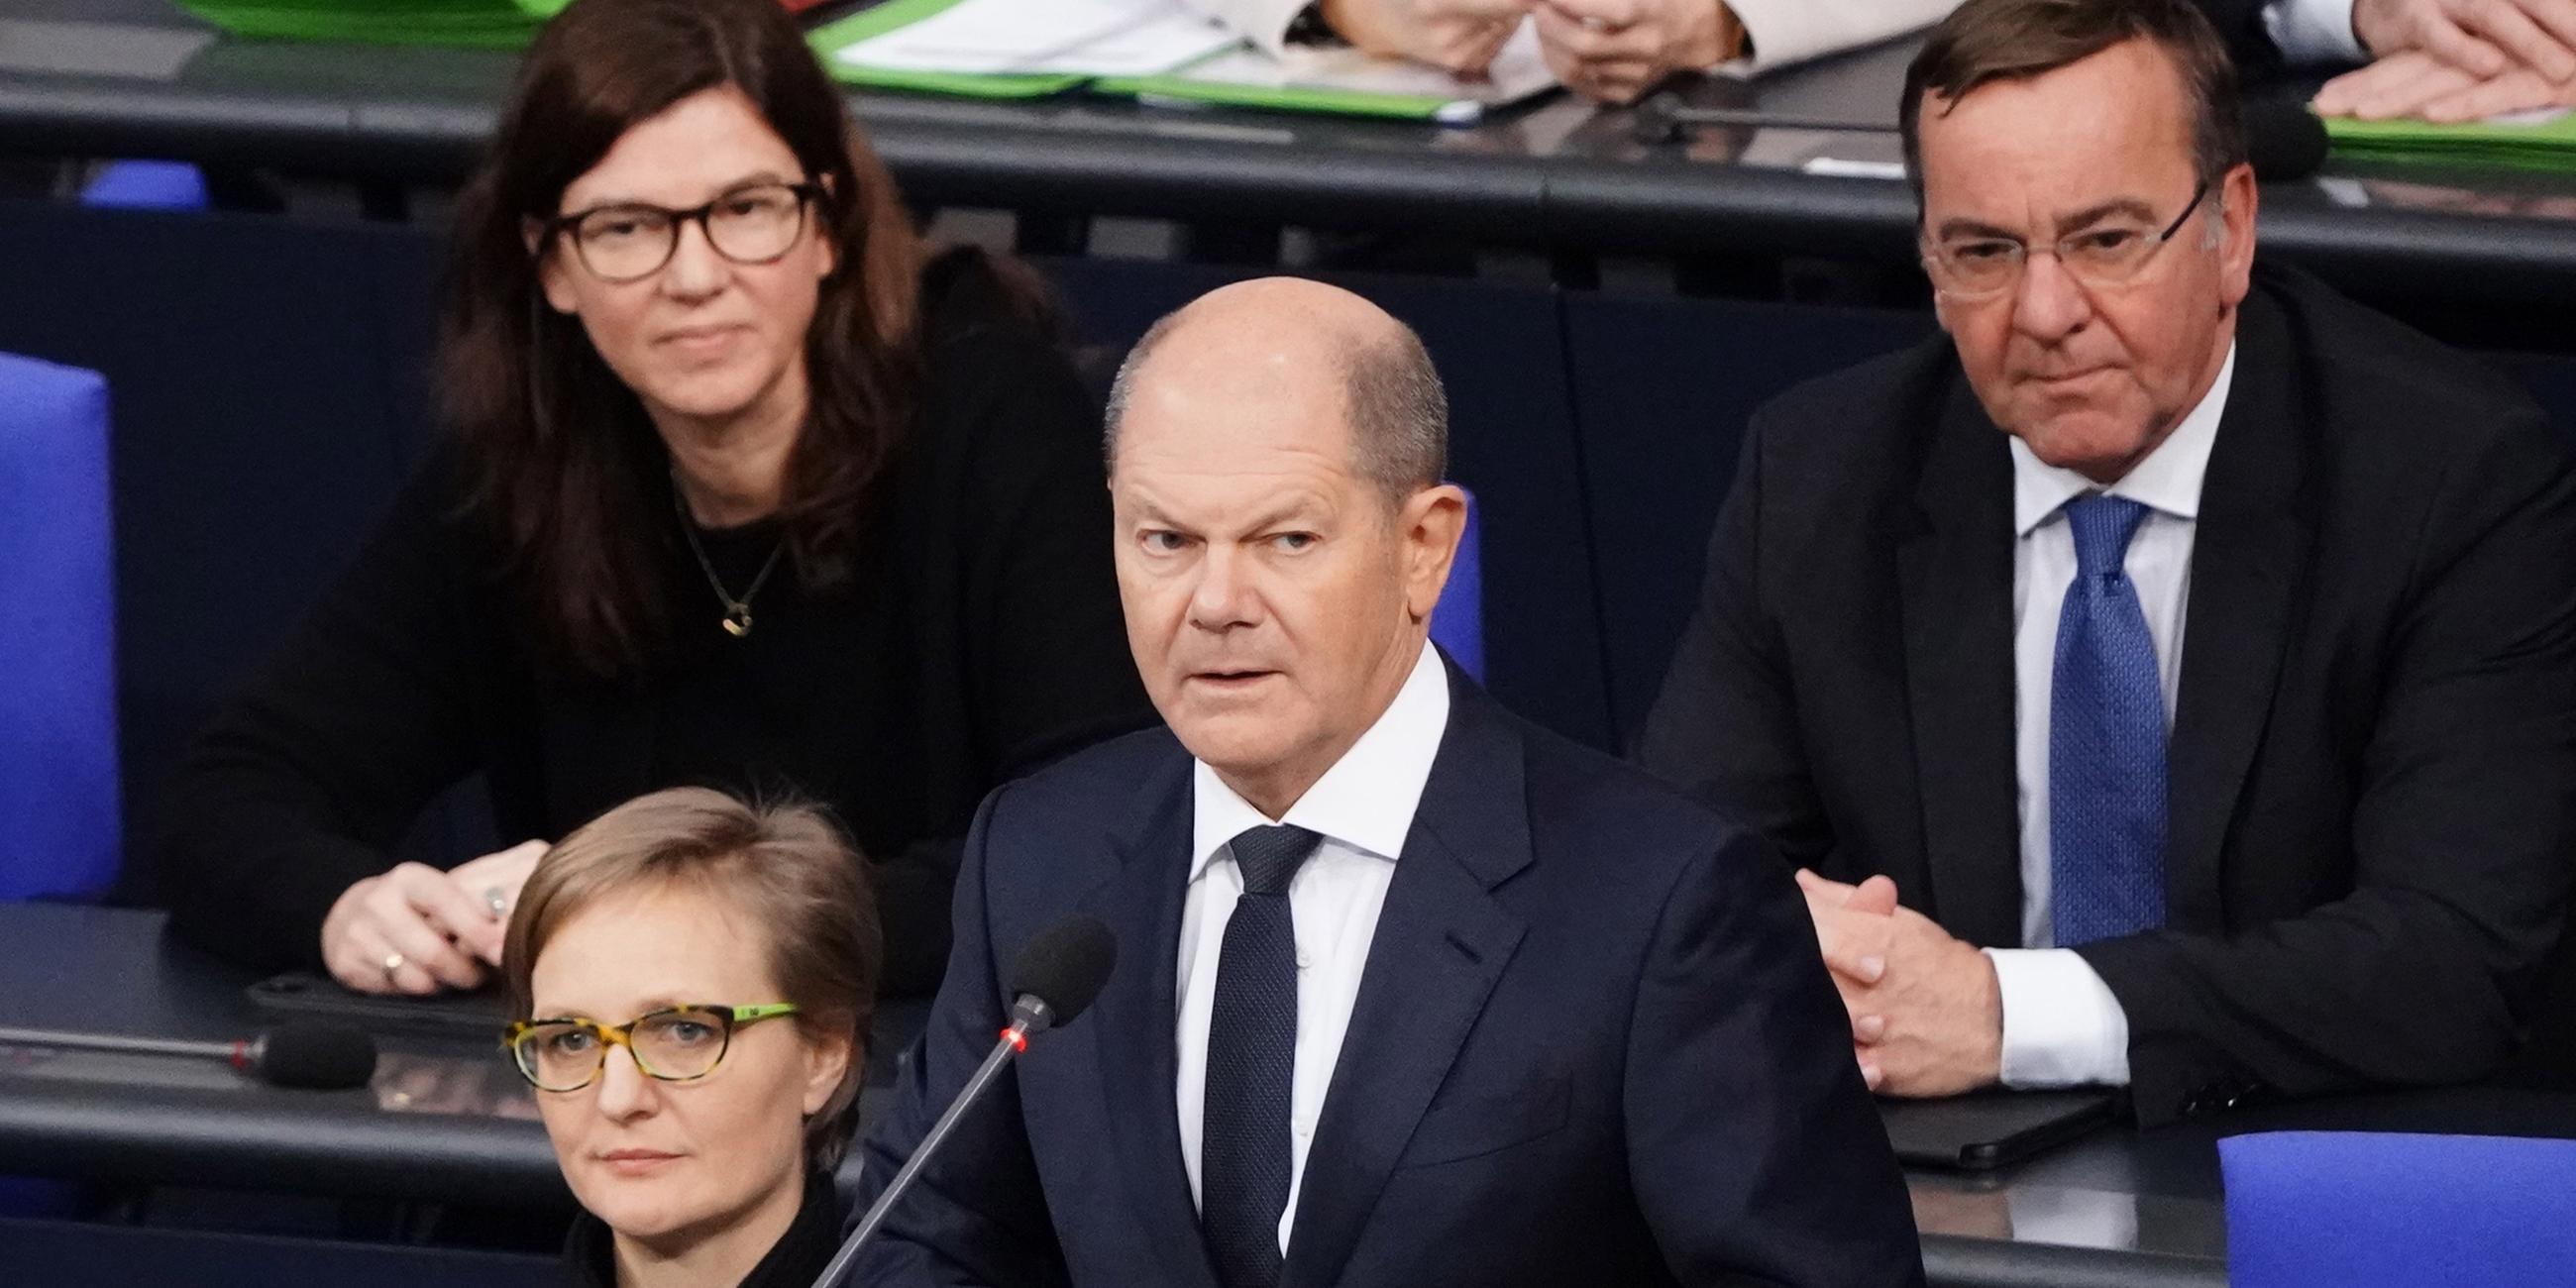 25.01.2023, Berlin: Olaf Scholz gibt im Bundestag Regierungserklärung ab. Im Hintergrund Kabinettsmitglieder, darunter Boris Pistorius